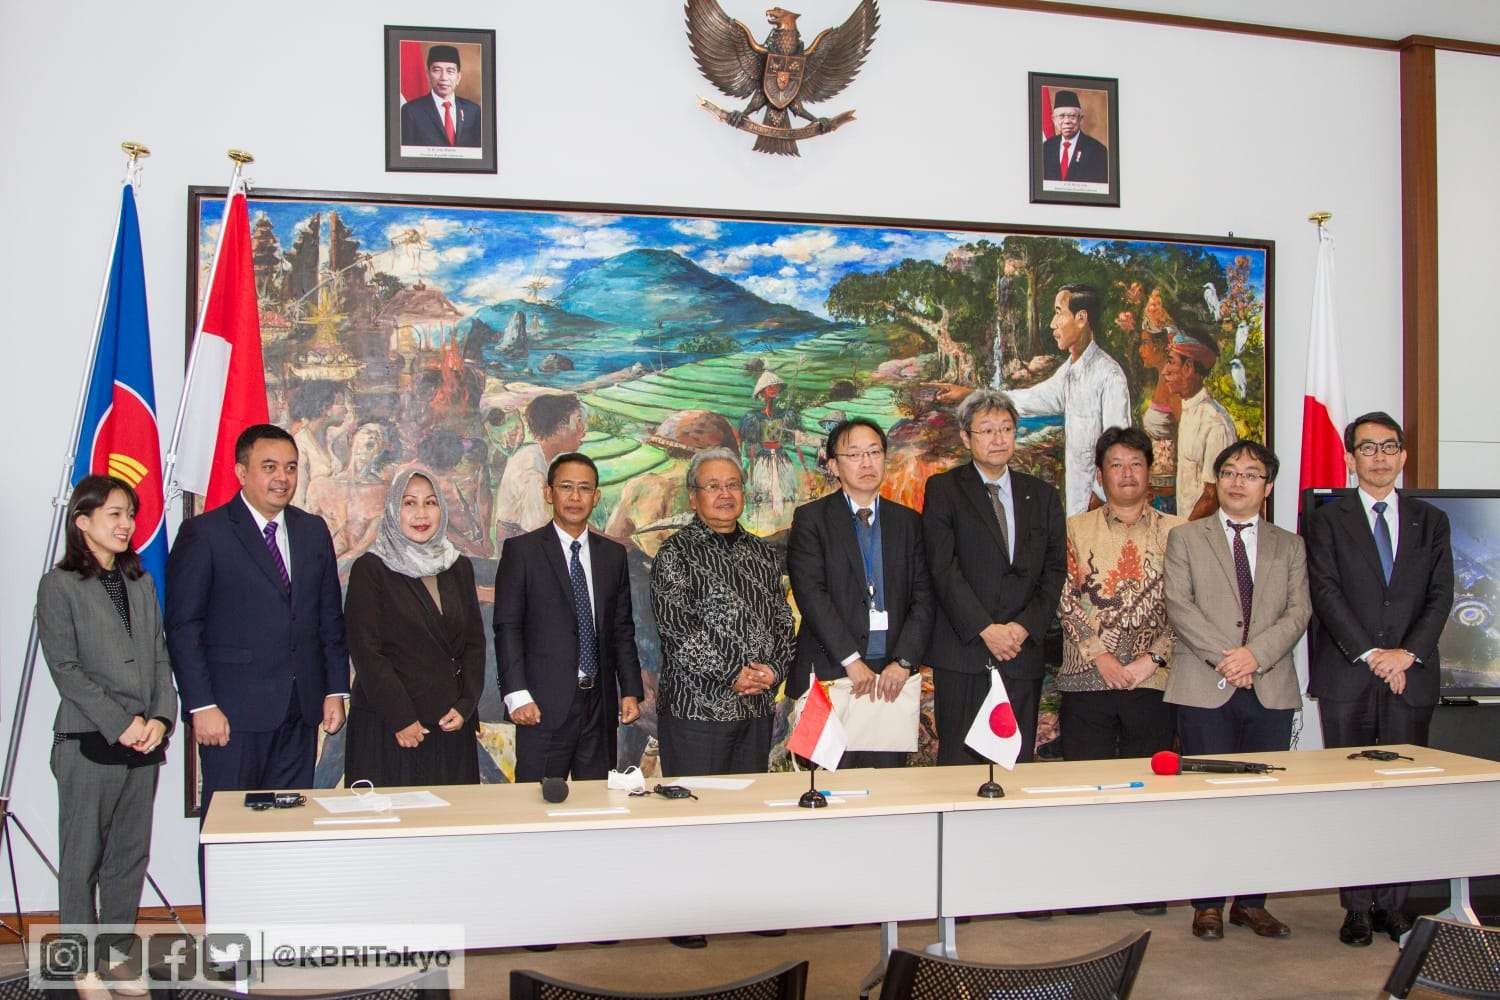 Duta Besar Republik Indonesia (Dubes RI) untuk Jepang Heri Akhmadi memfasilitasi penandatanganan empat Nota Kesepahaman. (Foto: Dok KBRI Tokyo)